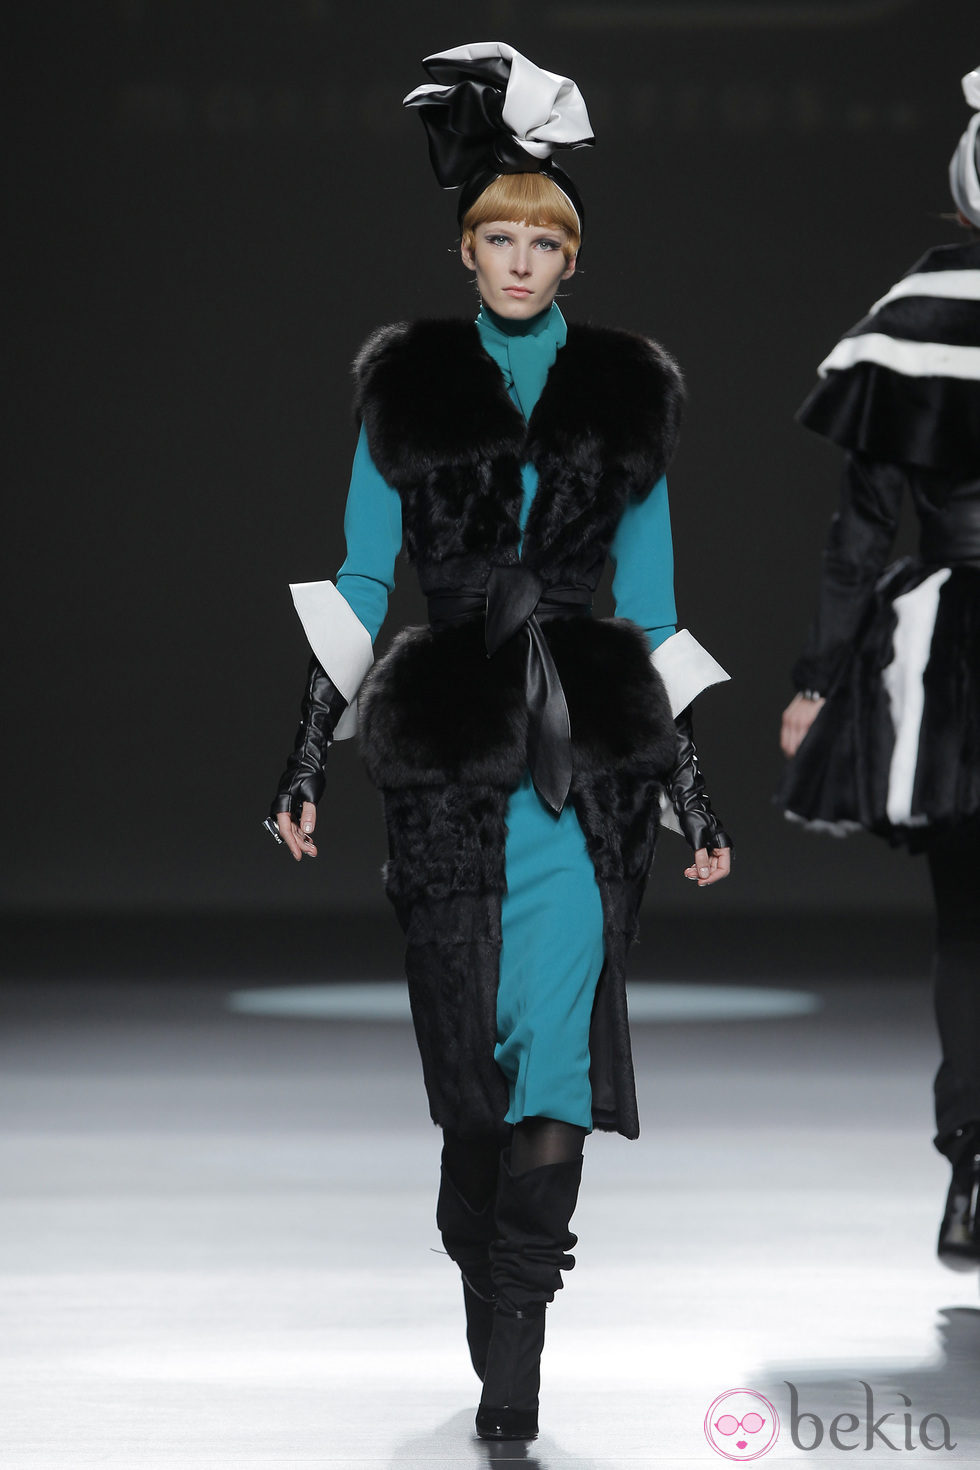 Abrigo de piel negro de la colección otoño/invierno 2013/2014 de María Barros en Madrid Fashion Week